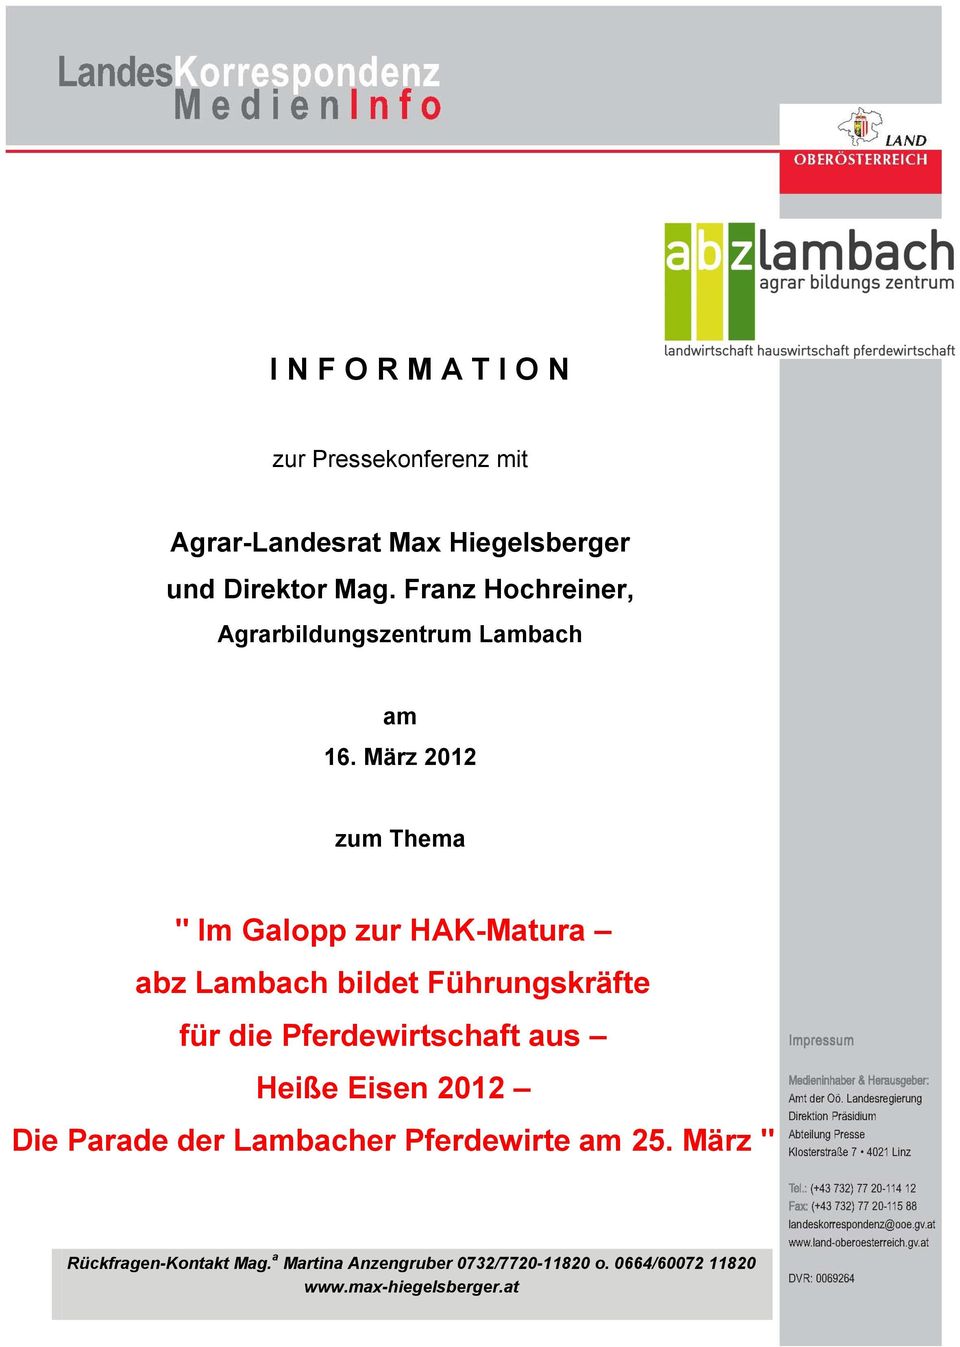 März 2012 zum Thema " Im Galopp zur HAK-Matura abz Lambach bildet Führungskräfte für die Pferdewirtschaft